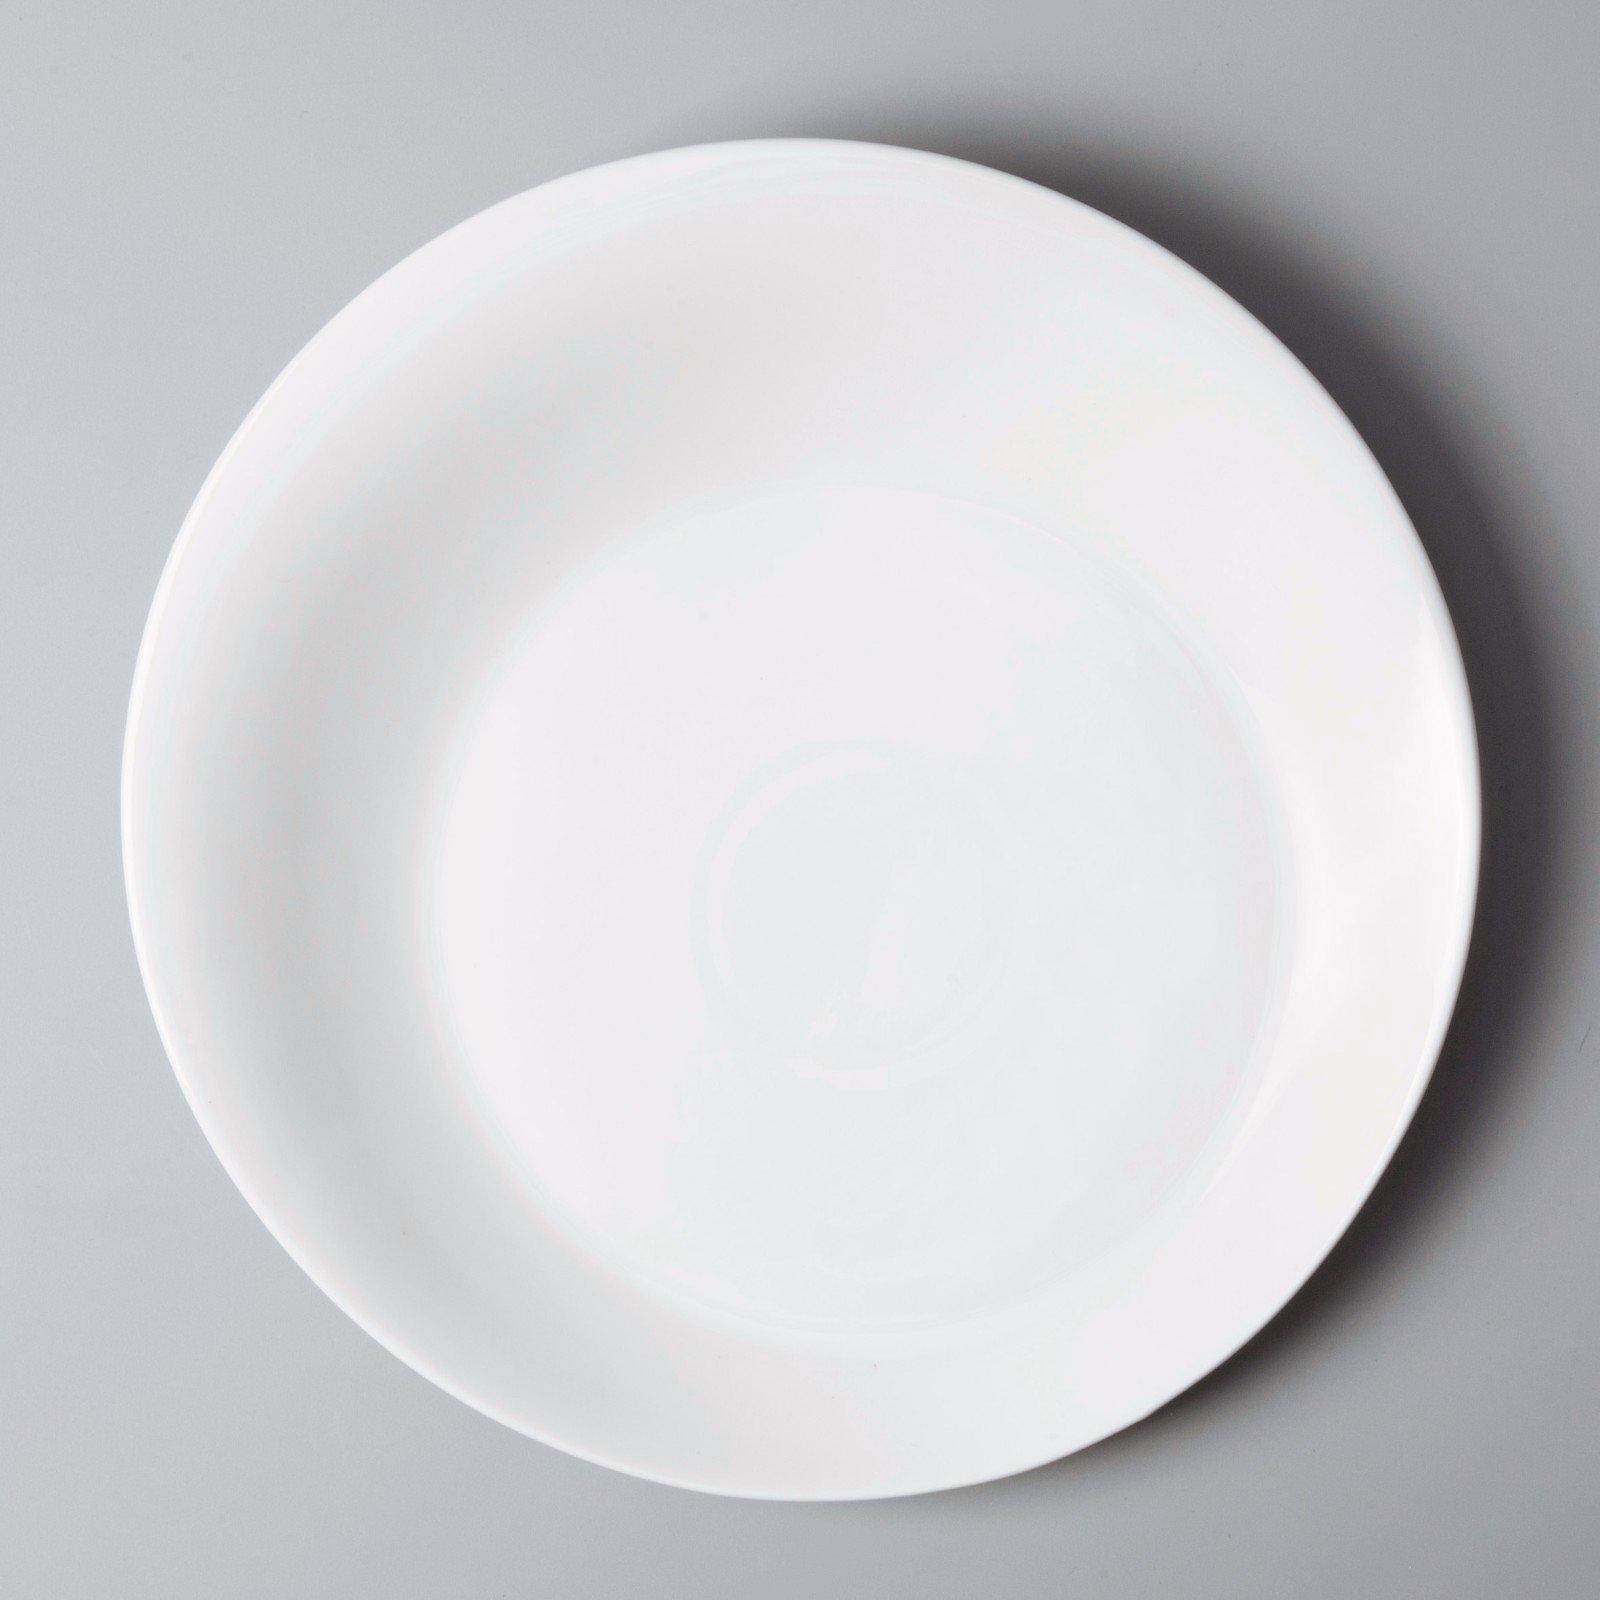 elegant commercial restaurant plates manufacturer for bistro-3